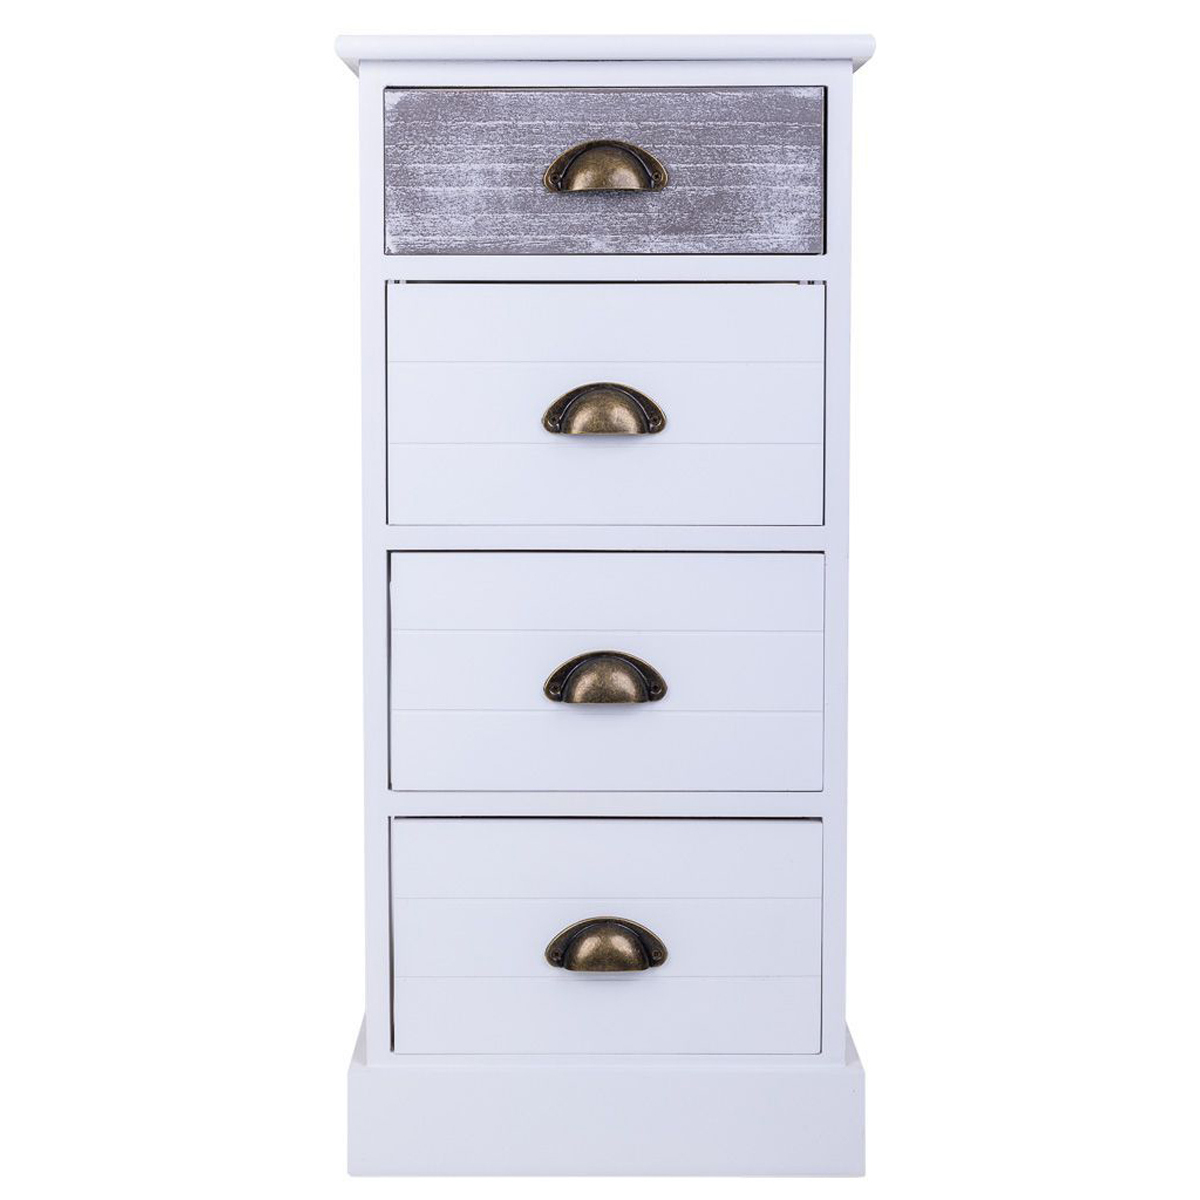 pegane chiffonnier, meuble de rangement en bois avec 5 tiroirs coloris gris, blanc - longueur 35 x profondeur 25 x hauteur 76 cm  gris